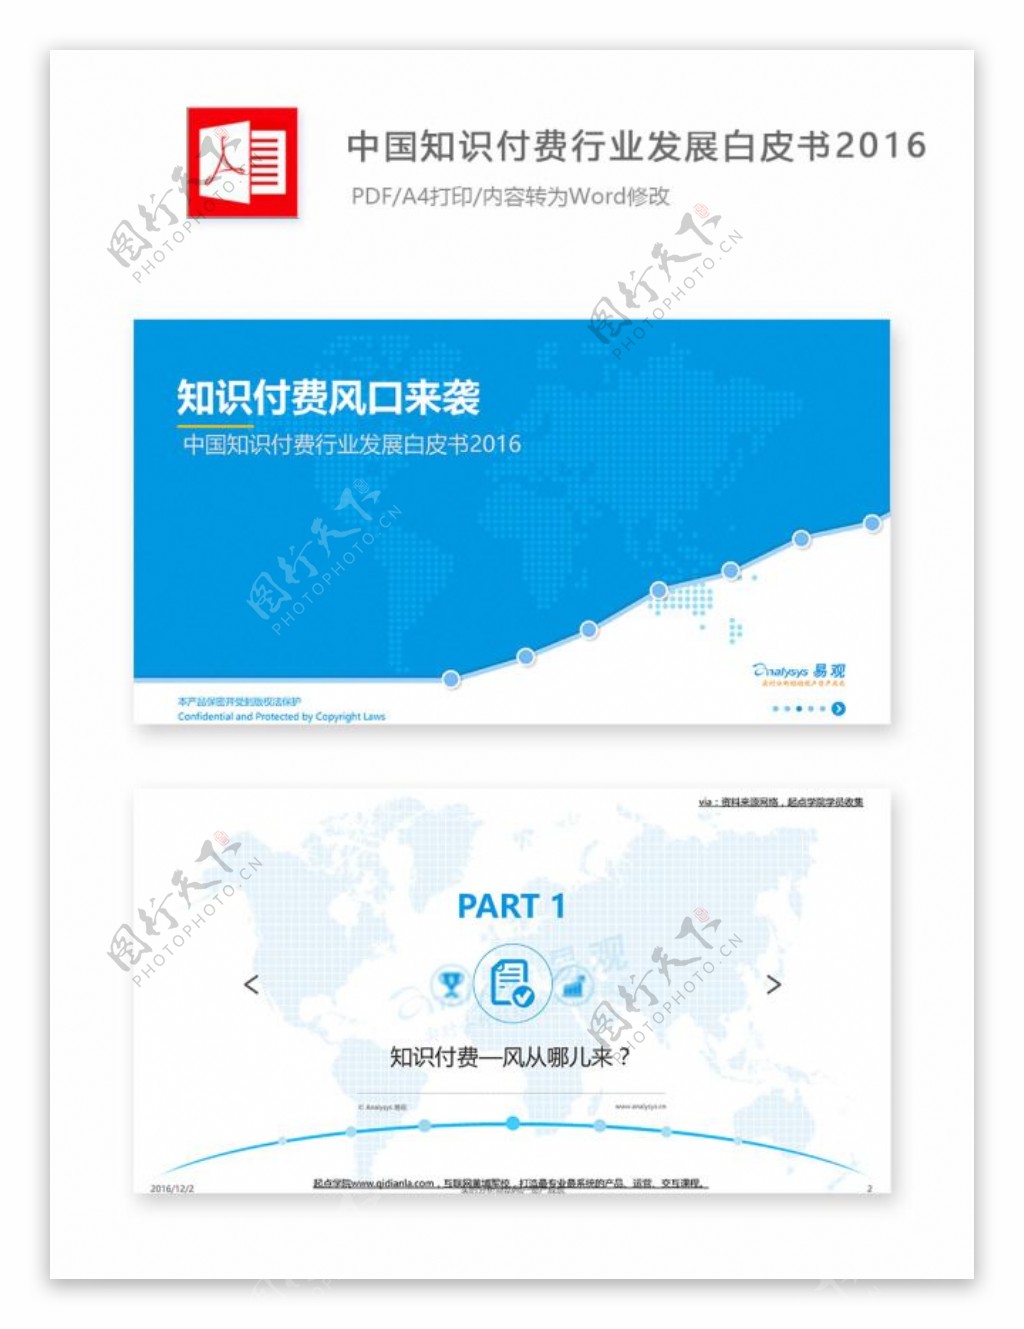 中国知识付费行业发展白皮书2016